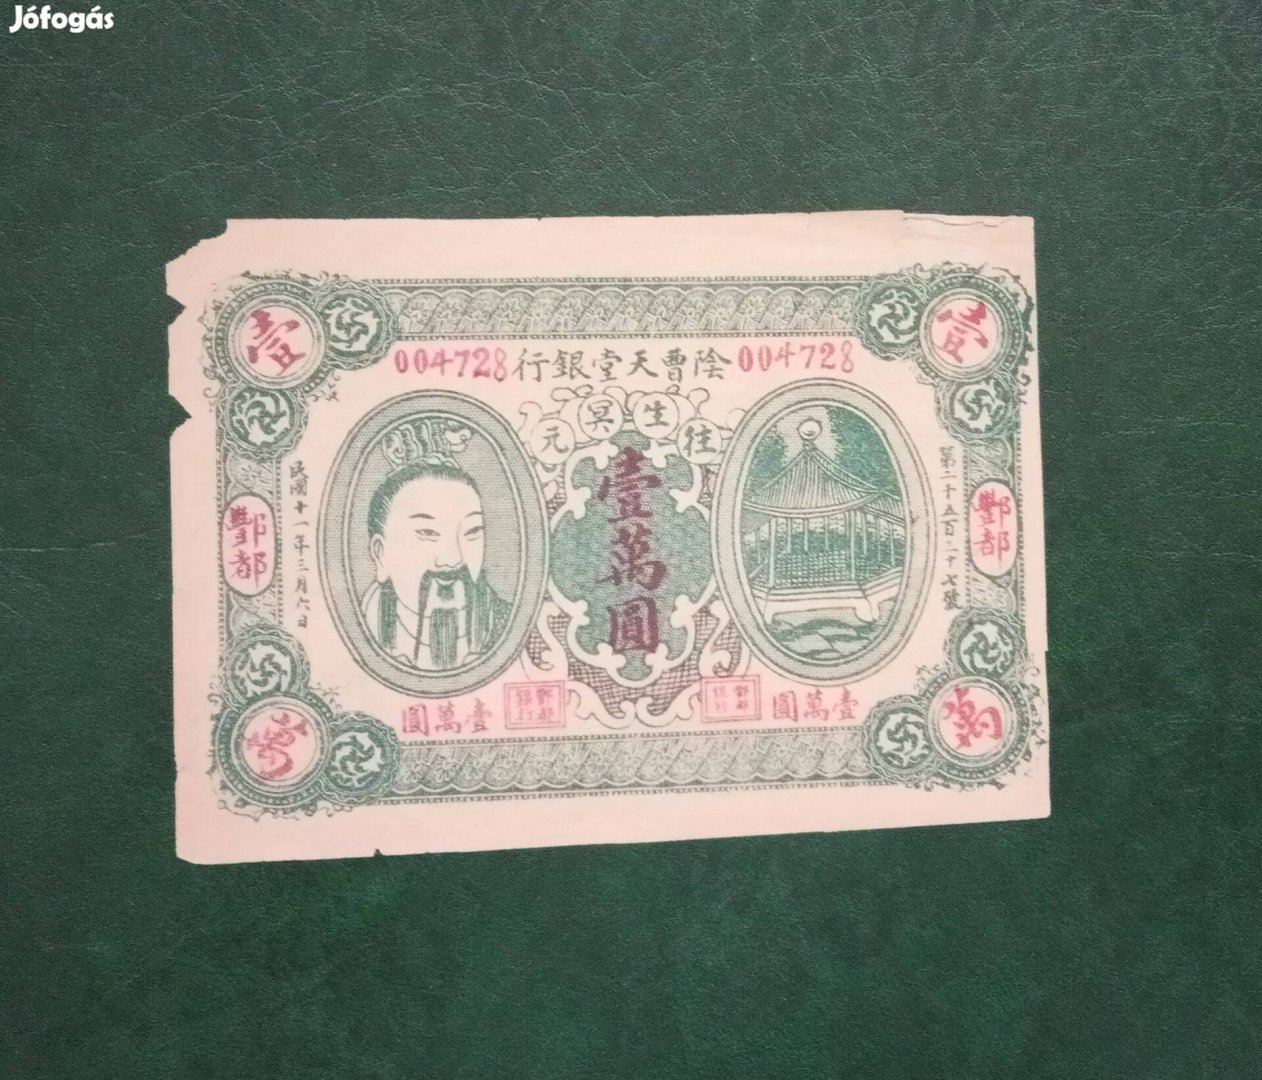 Kínai bankjegy forgalmi pénz az 1900-as évek első negyedéből